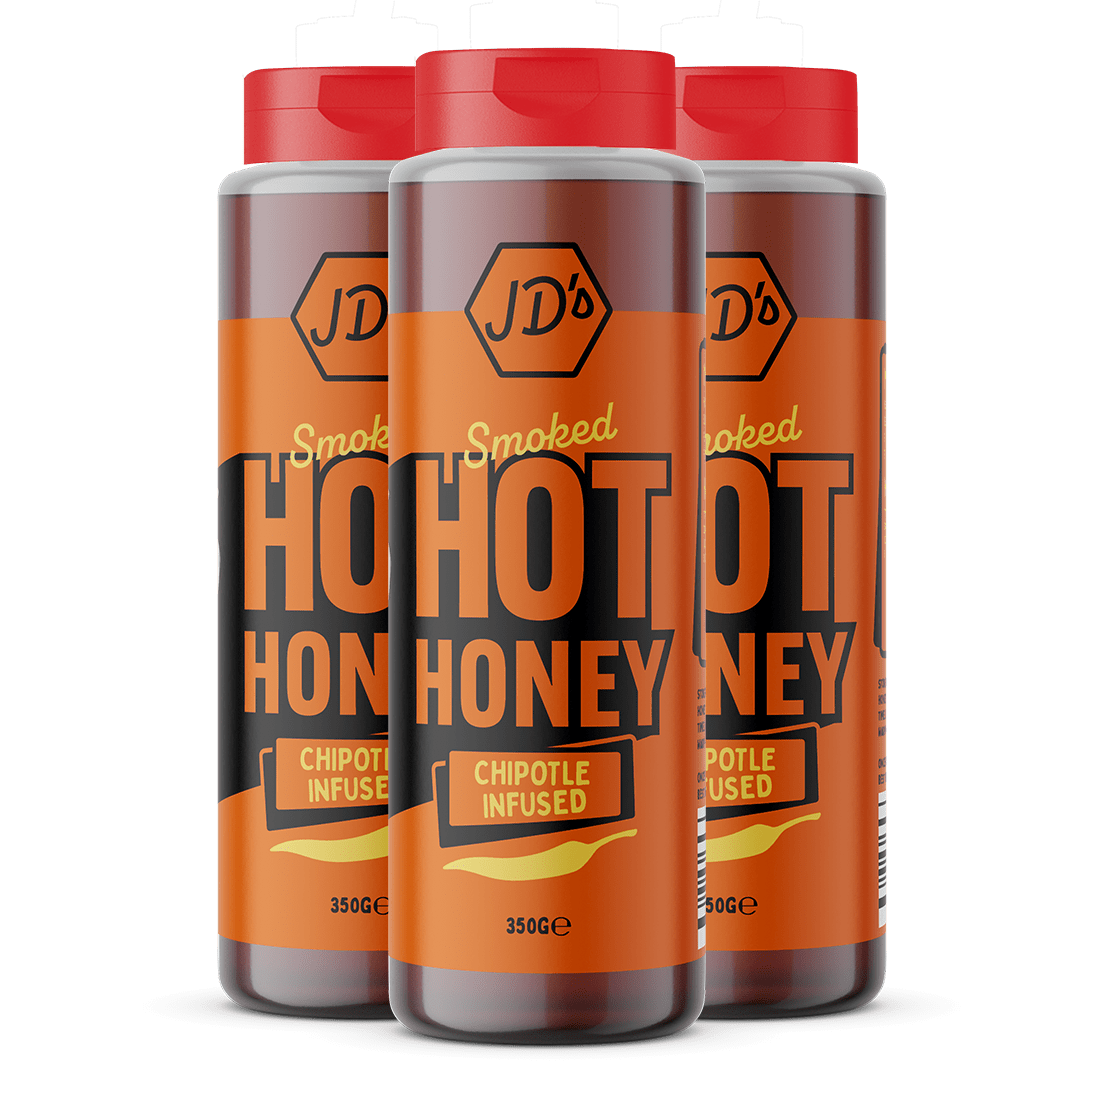 Multipack 3 x 350g - JD's Hot Honey